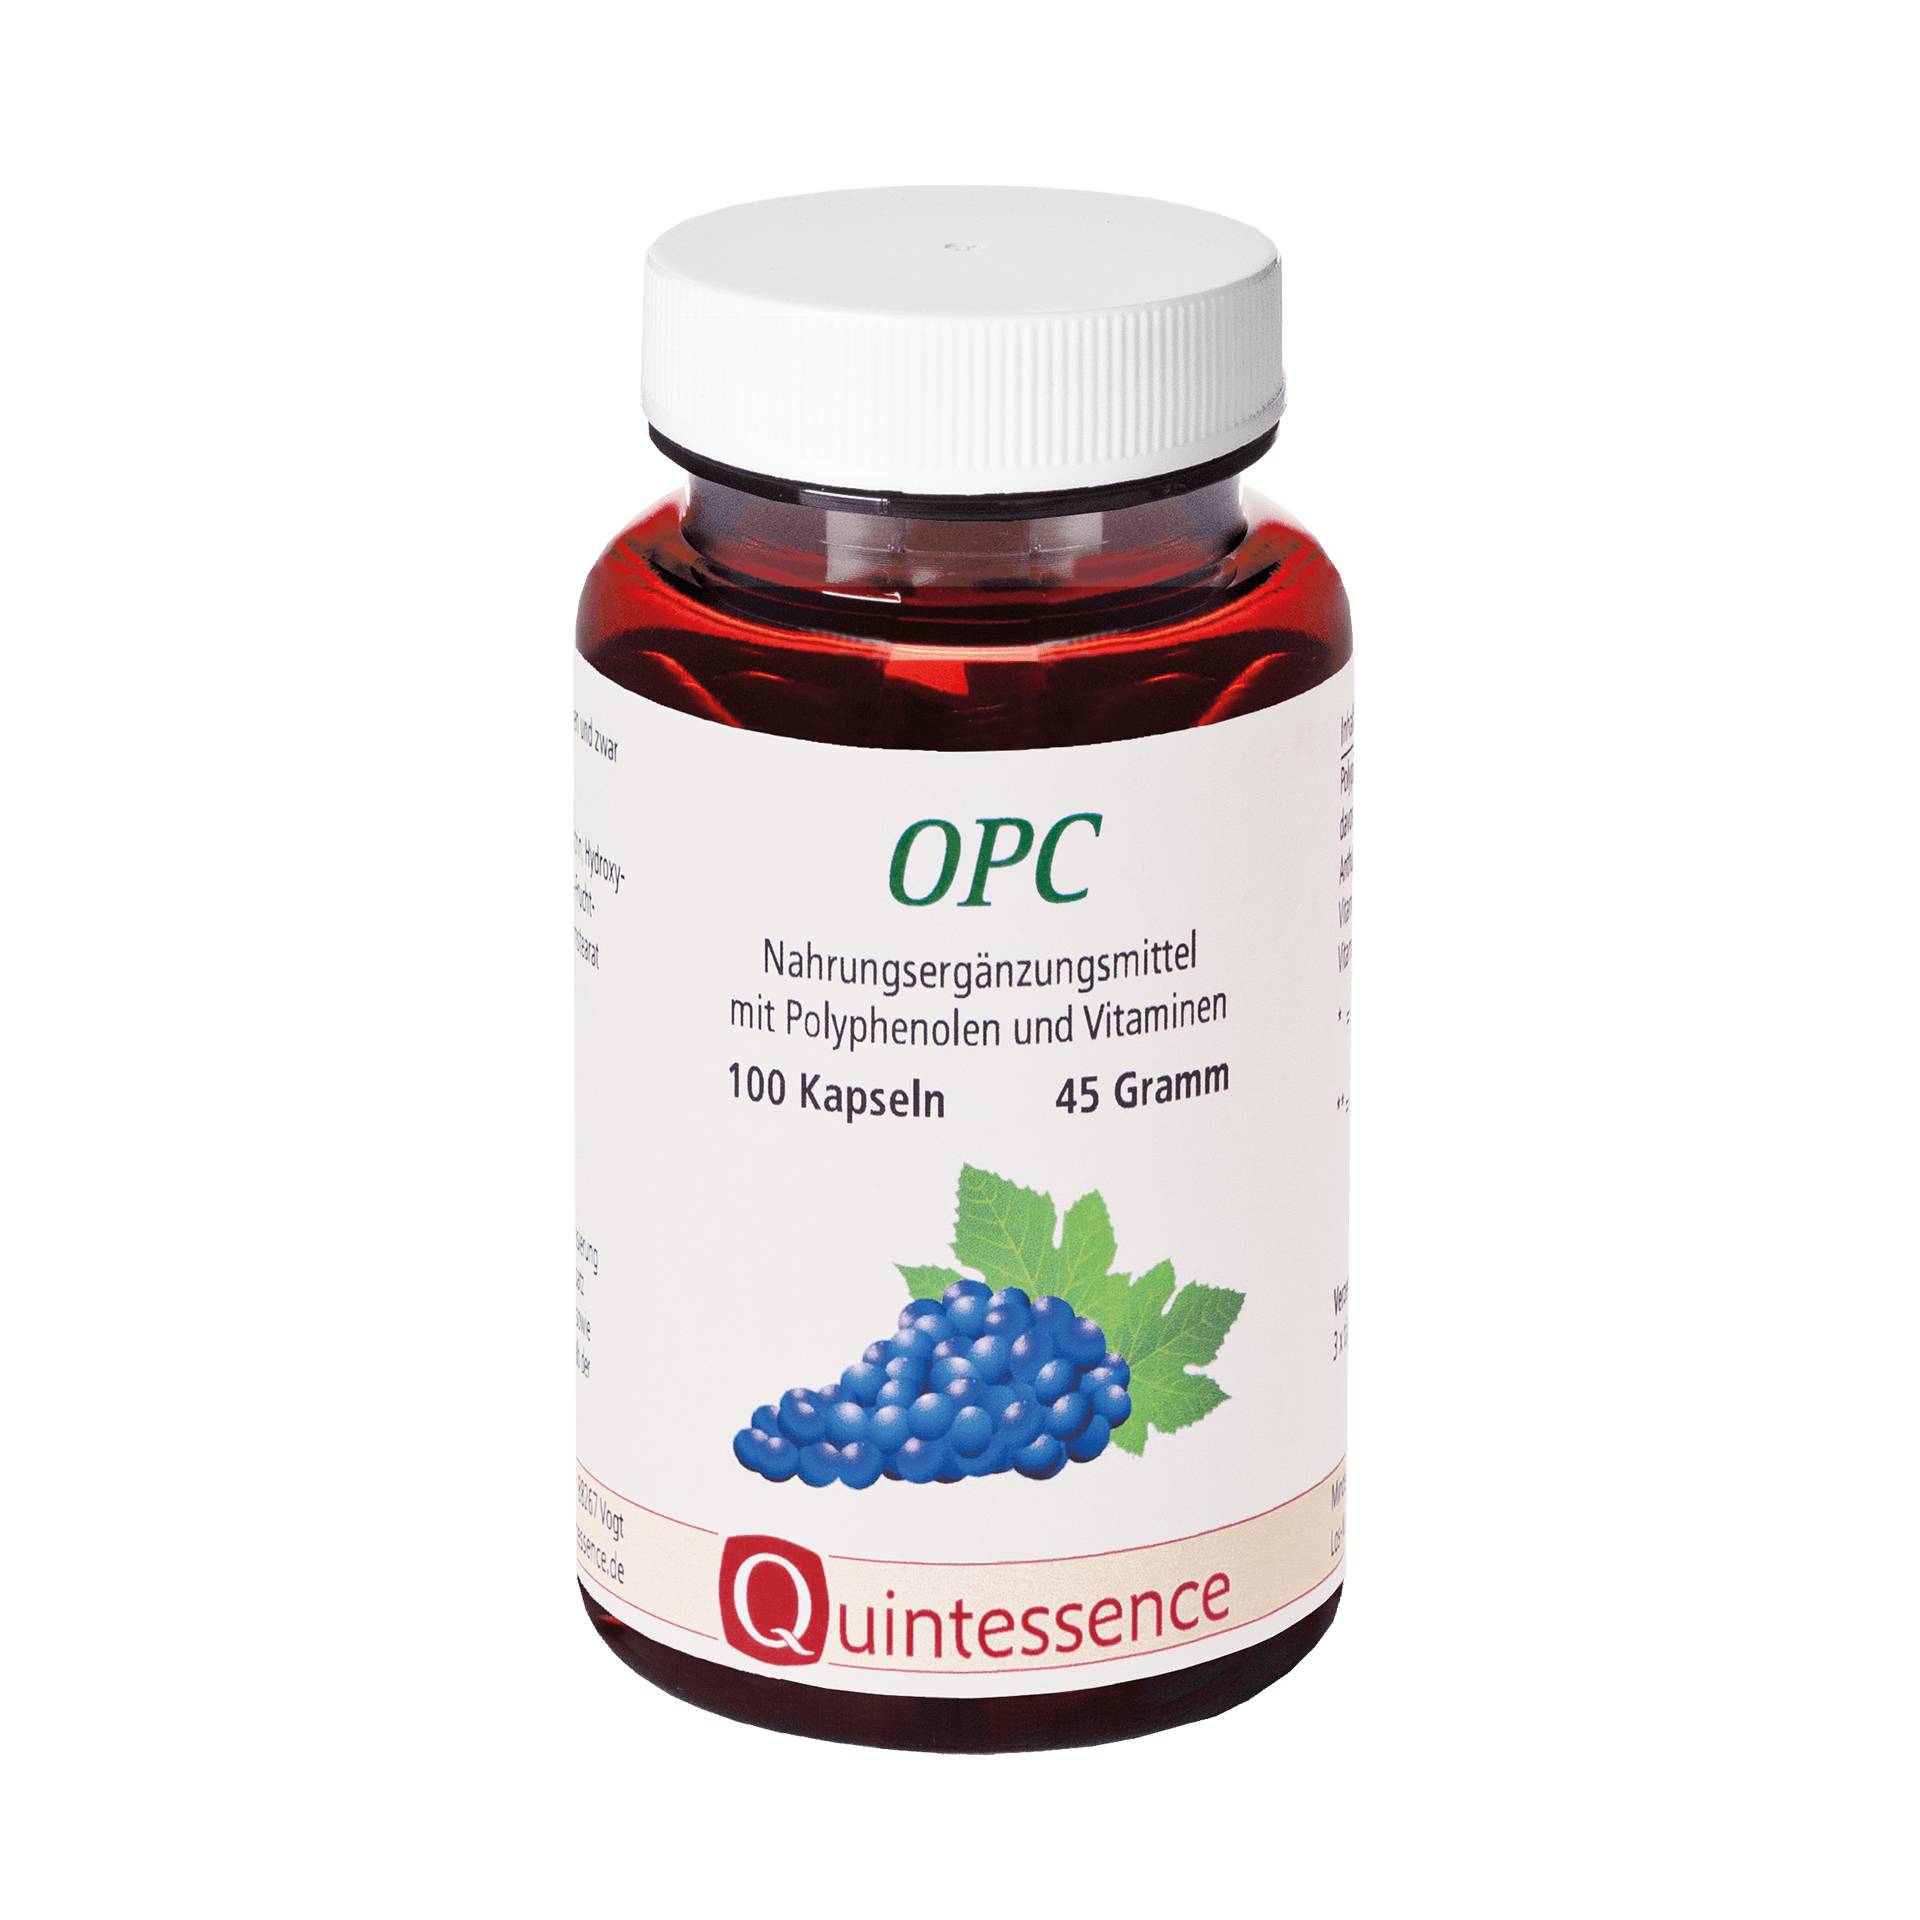 OPC 100 Kapseln - Traubenextrakt - Mit Vitamin B12 und Vitamin C aus der Acerola-Kirsche - Vegan - Quintessence von Quintessence